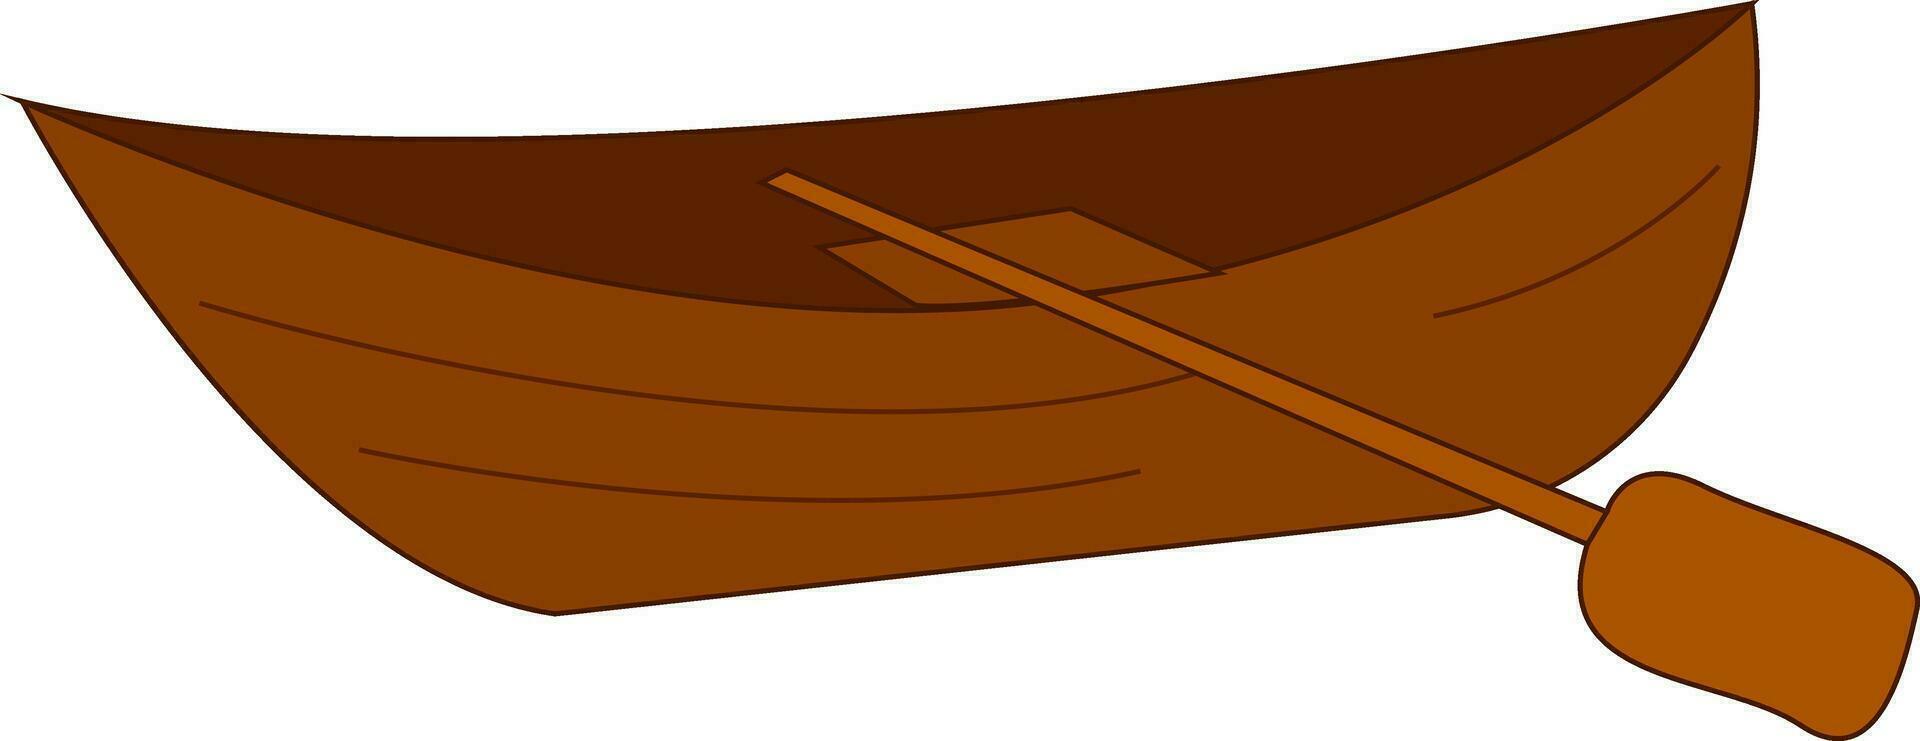 clipart de el marrón barco con el fila, vector o color ilustración